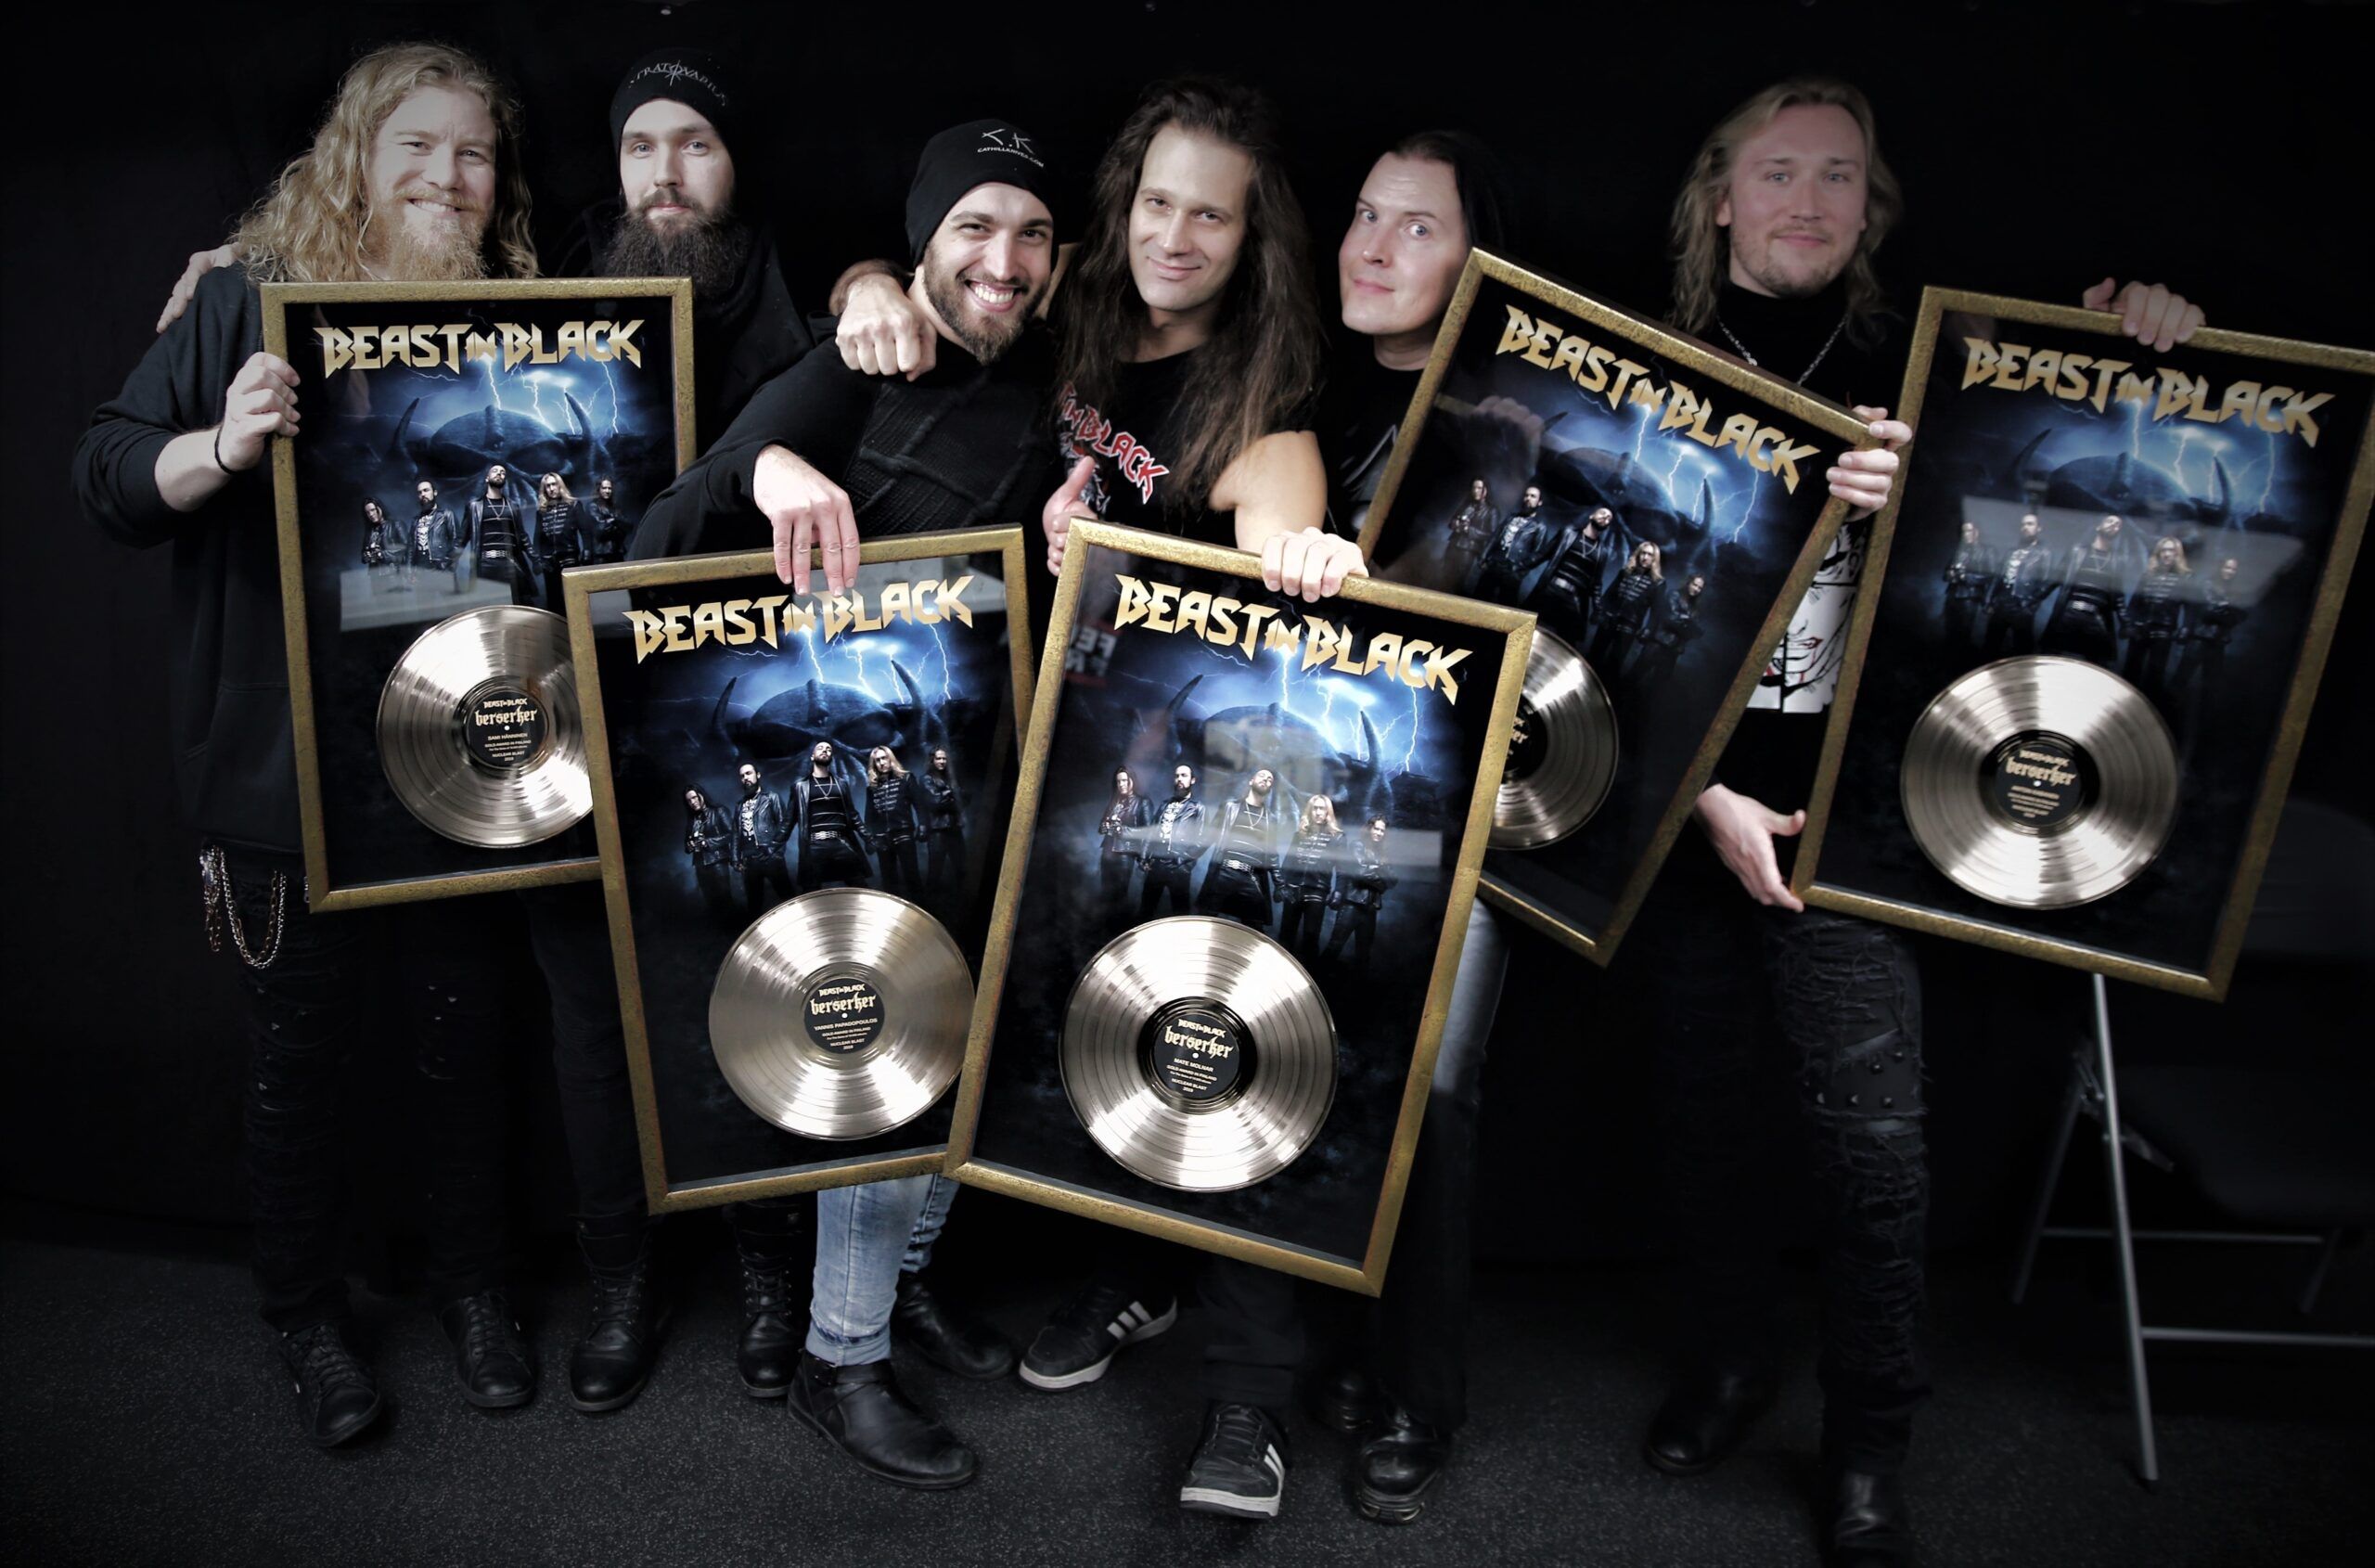 "Berserker" in Finnland mit goldener Schallplatte ausgezeichnet